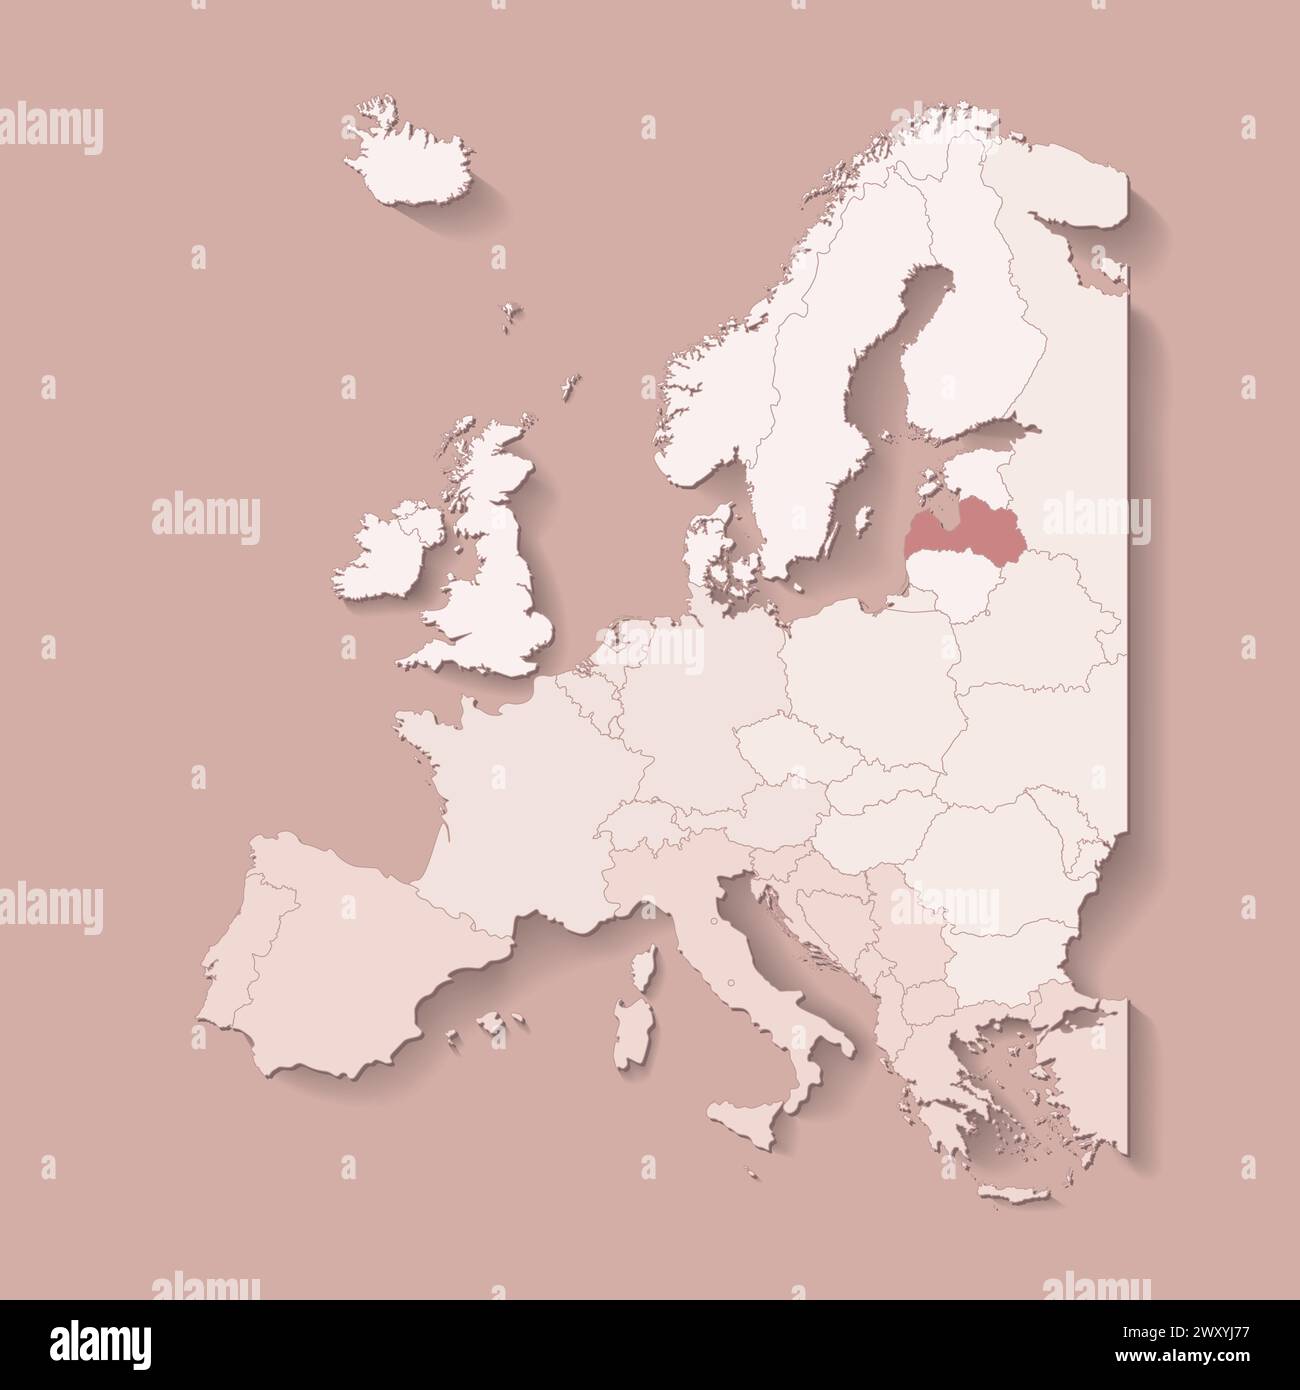 Illustrazione vettoriale con terra europea con confini di stati e paese contrassegnato Lettonia. Mappa politica in colori marroni con occidentale, sud e così via Illustrazione Vettoriale